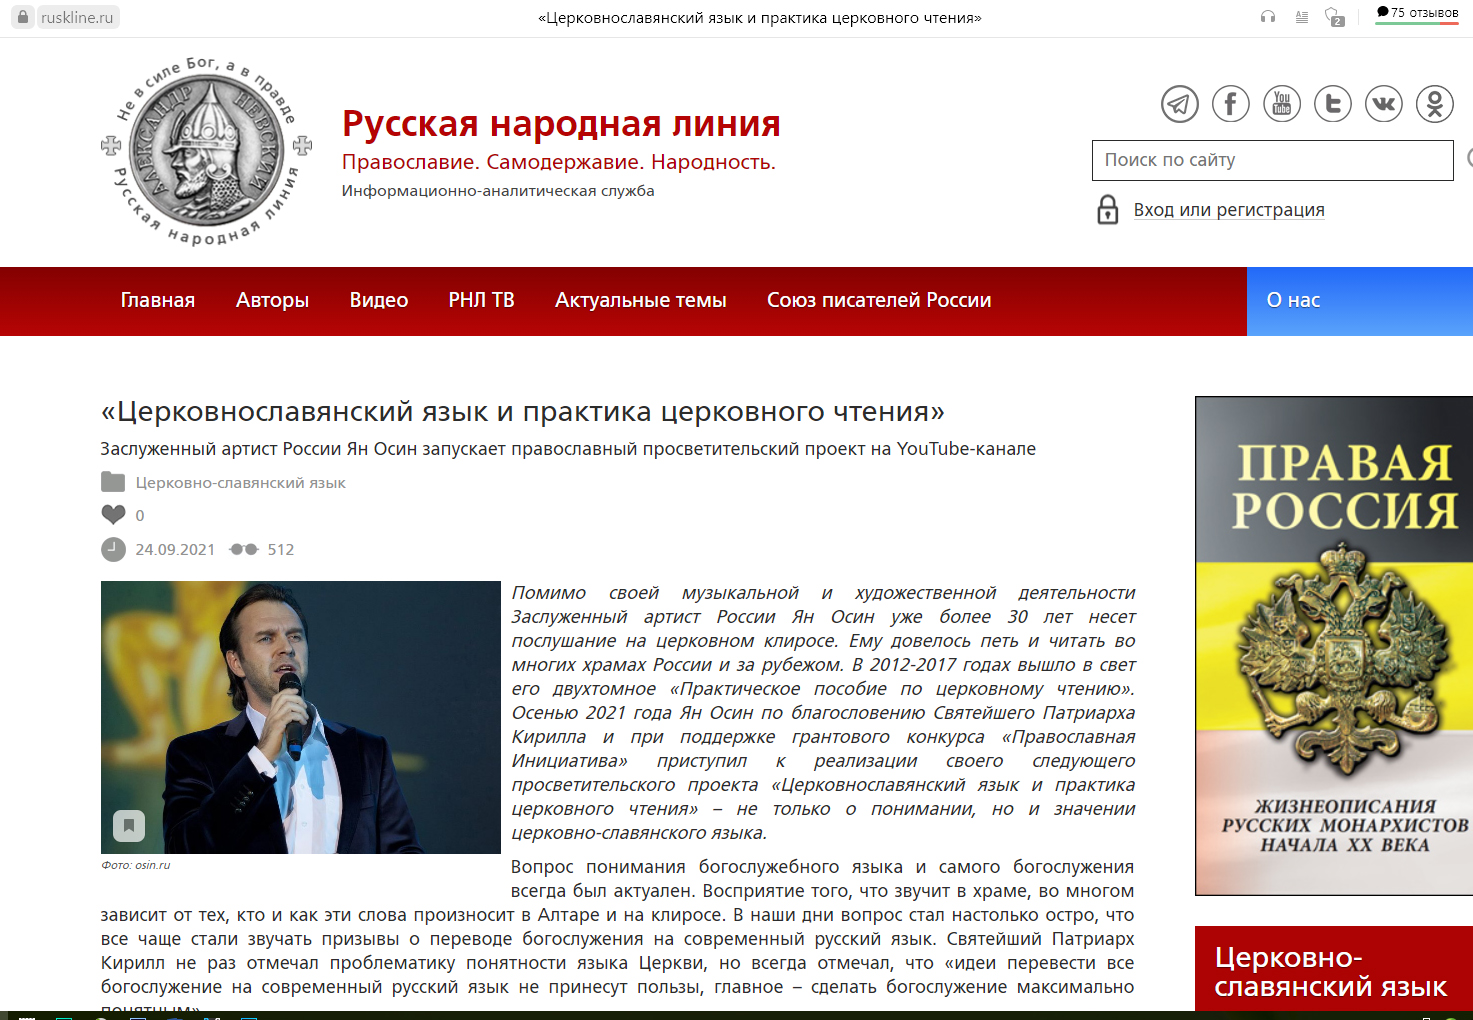 Анонс моего проекта о церковно-славянском языке опубликован на Русской Народной Линии